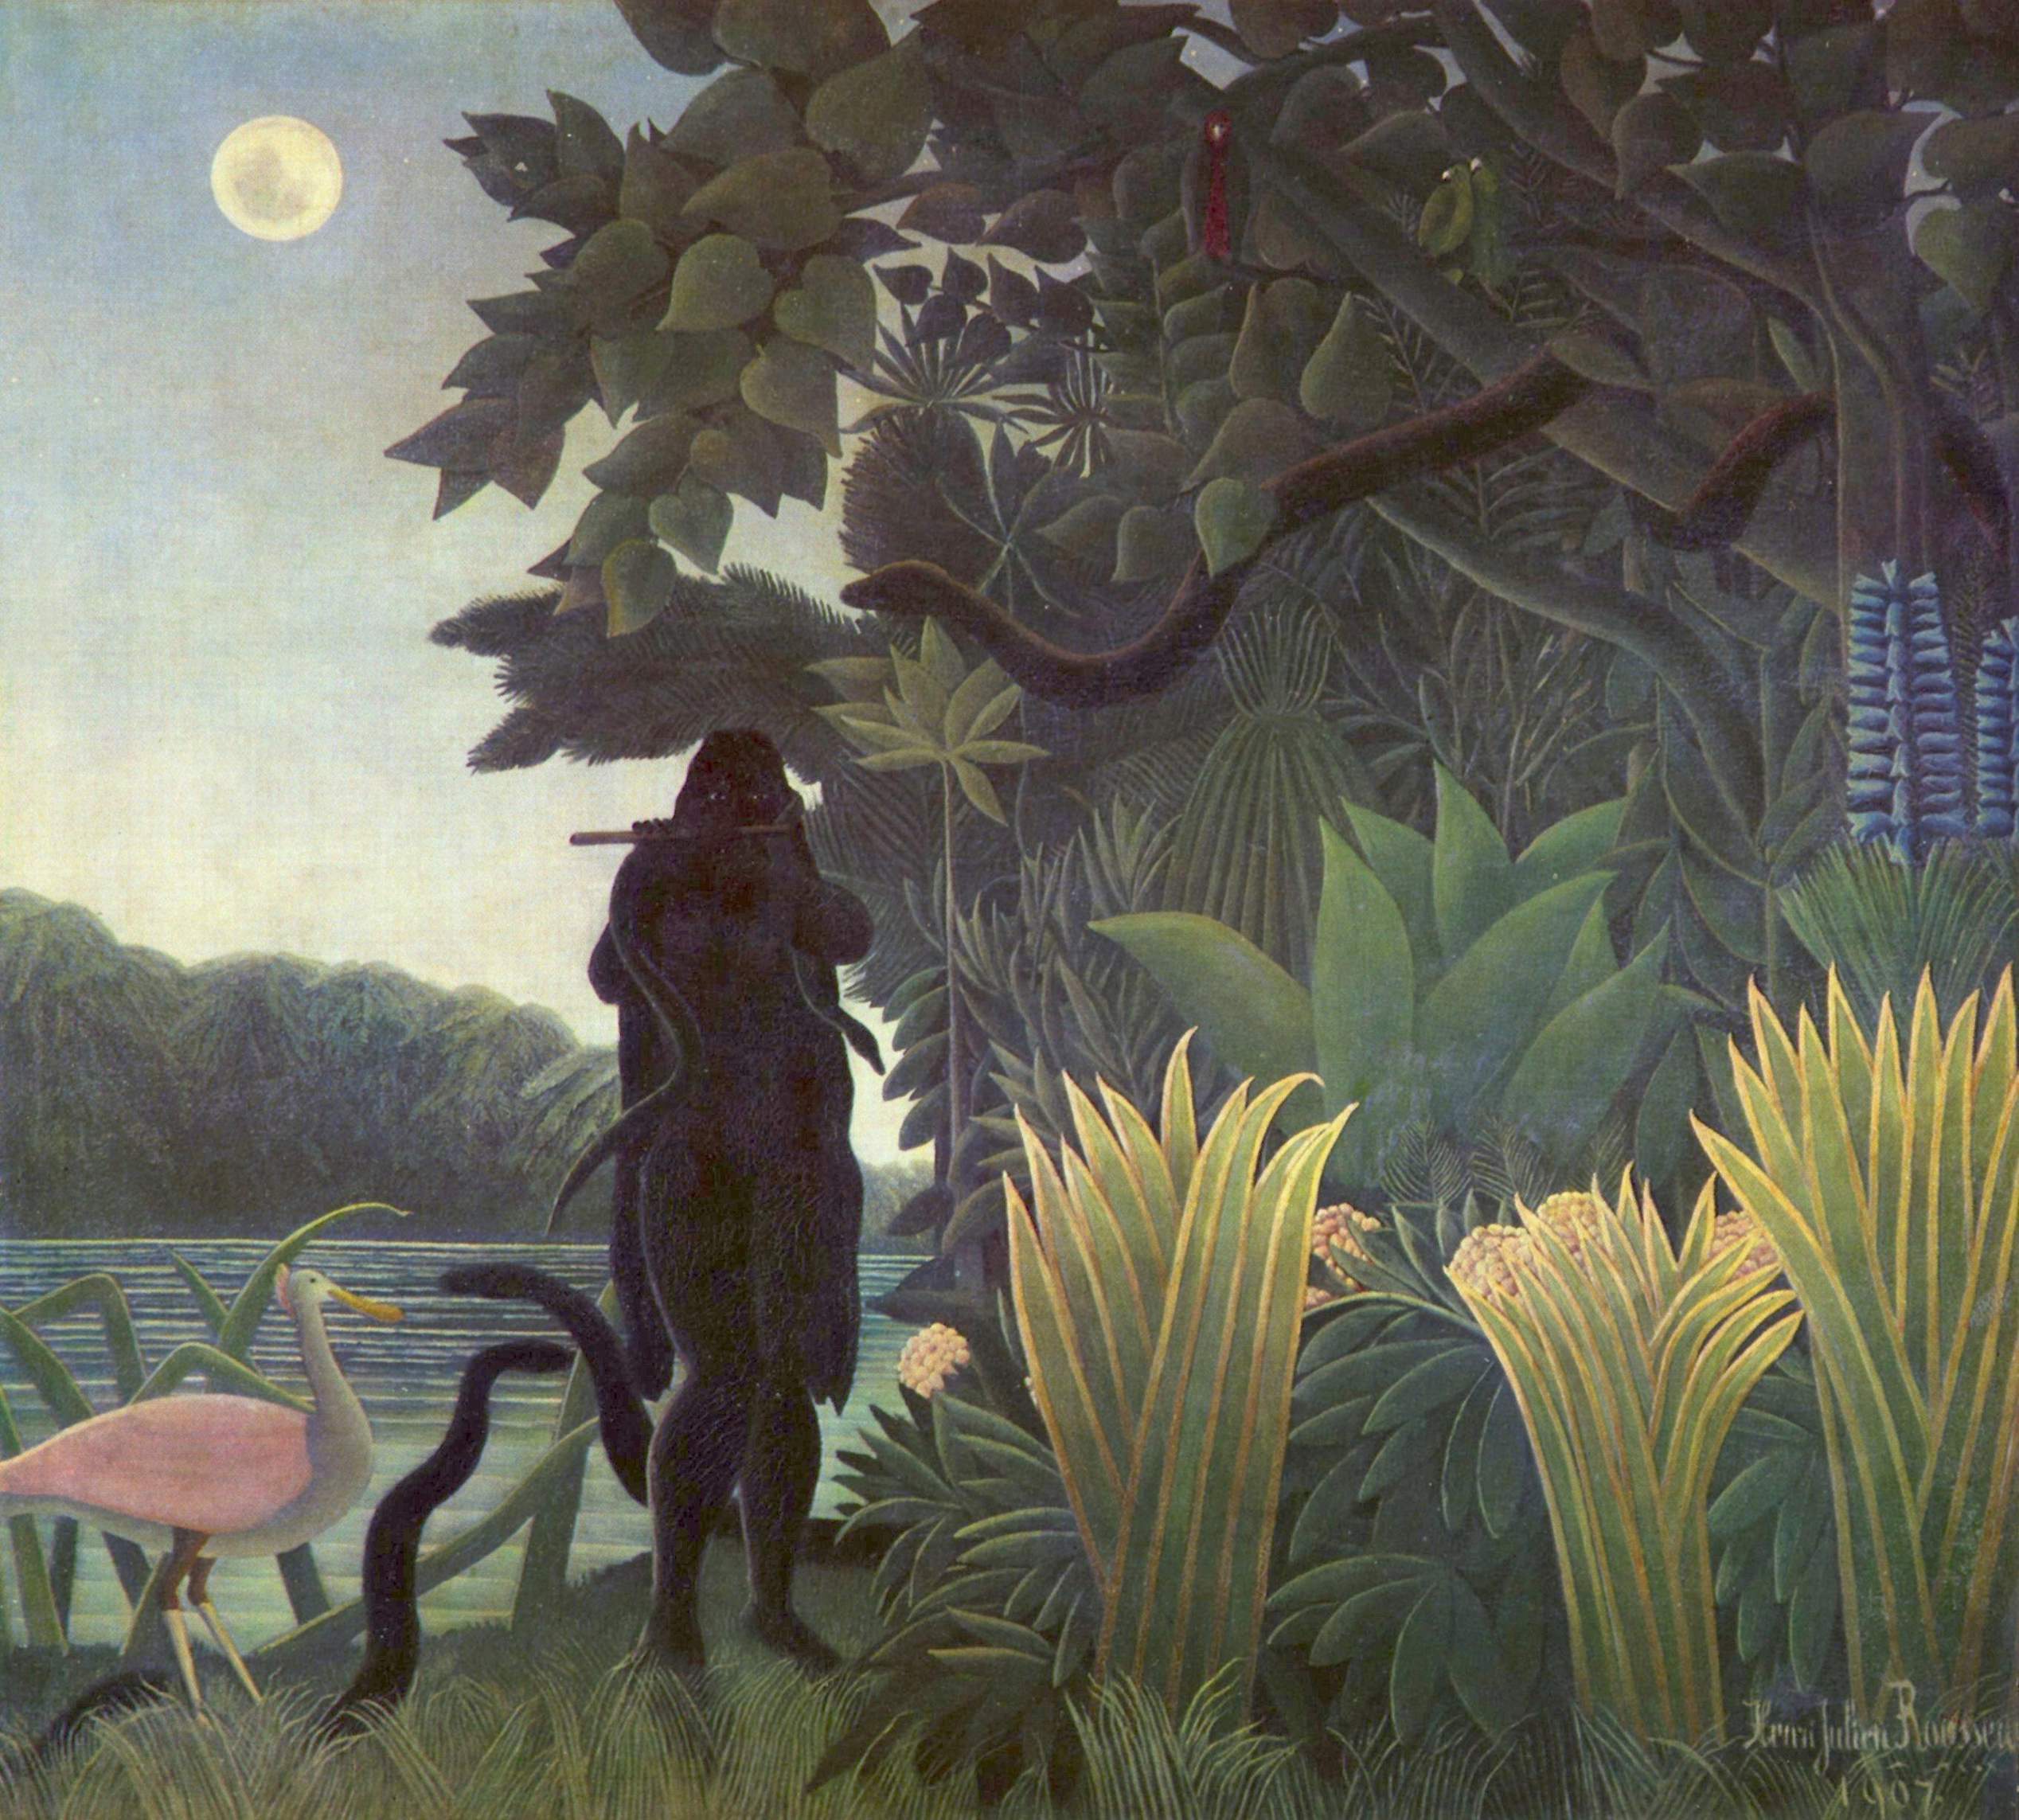 Henri Rousseau, The Snake Charmer, 1907, oil on canvas, 189 x 169 cm (Musée d’Orsay, Paris)